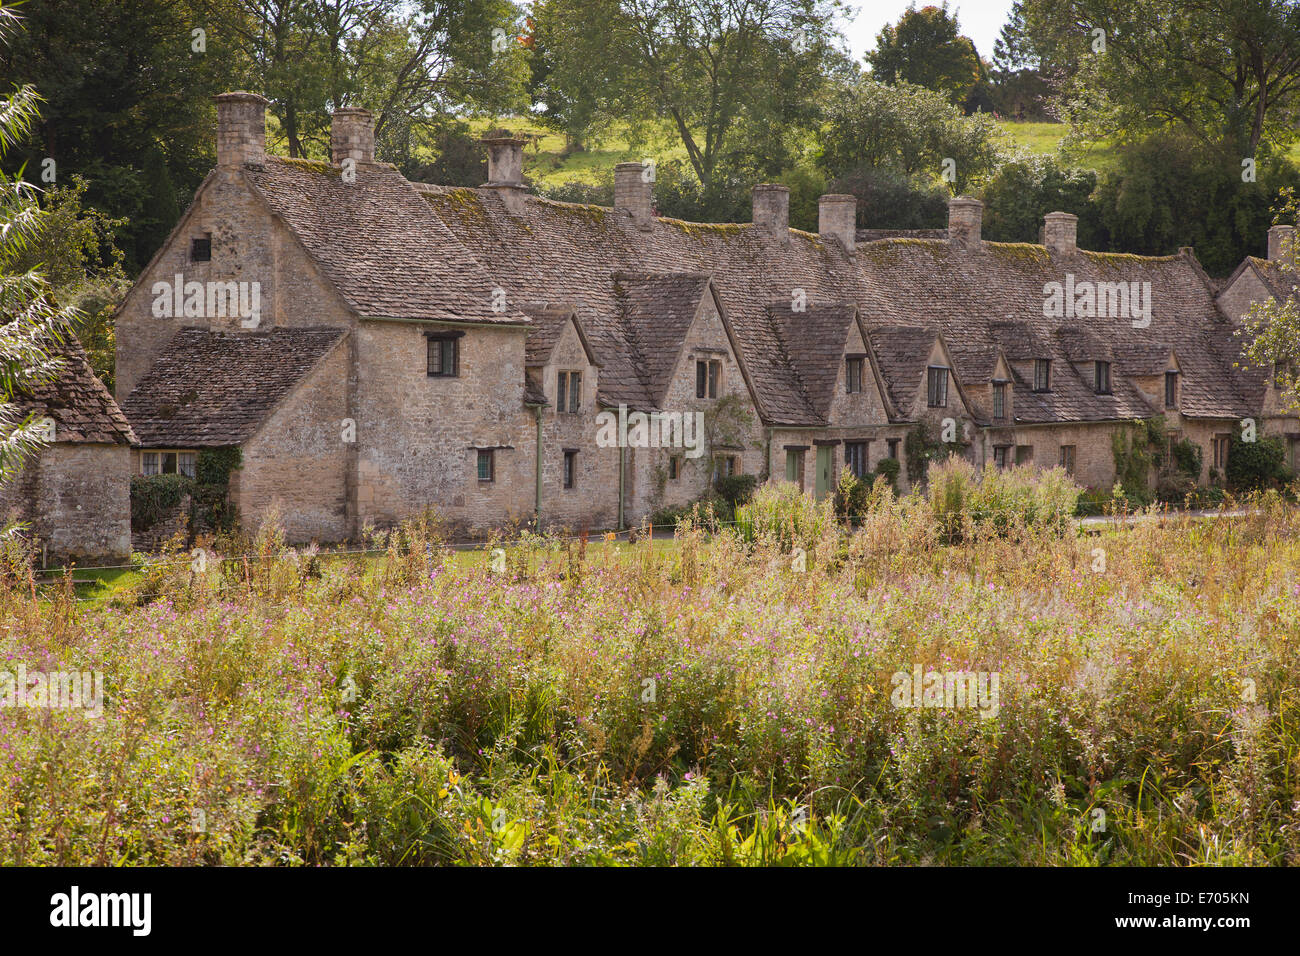 Arlington Row weavers cottages, Bibury, Cotswolds, Royaume-Uni Banque D'Images